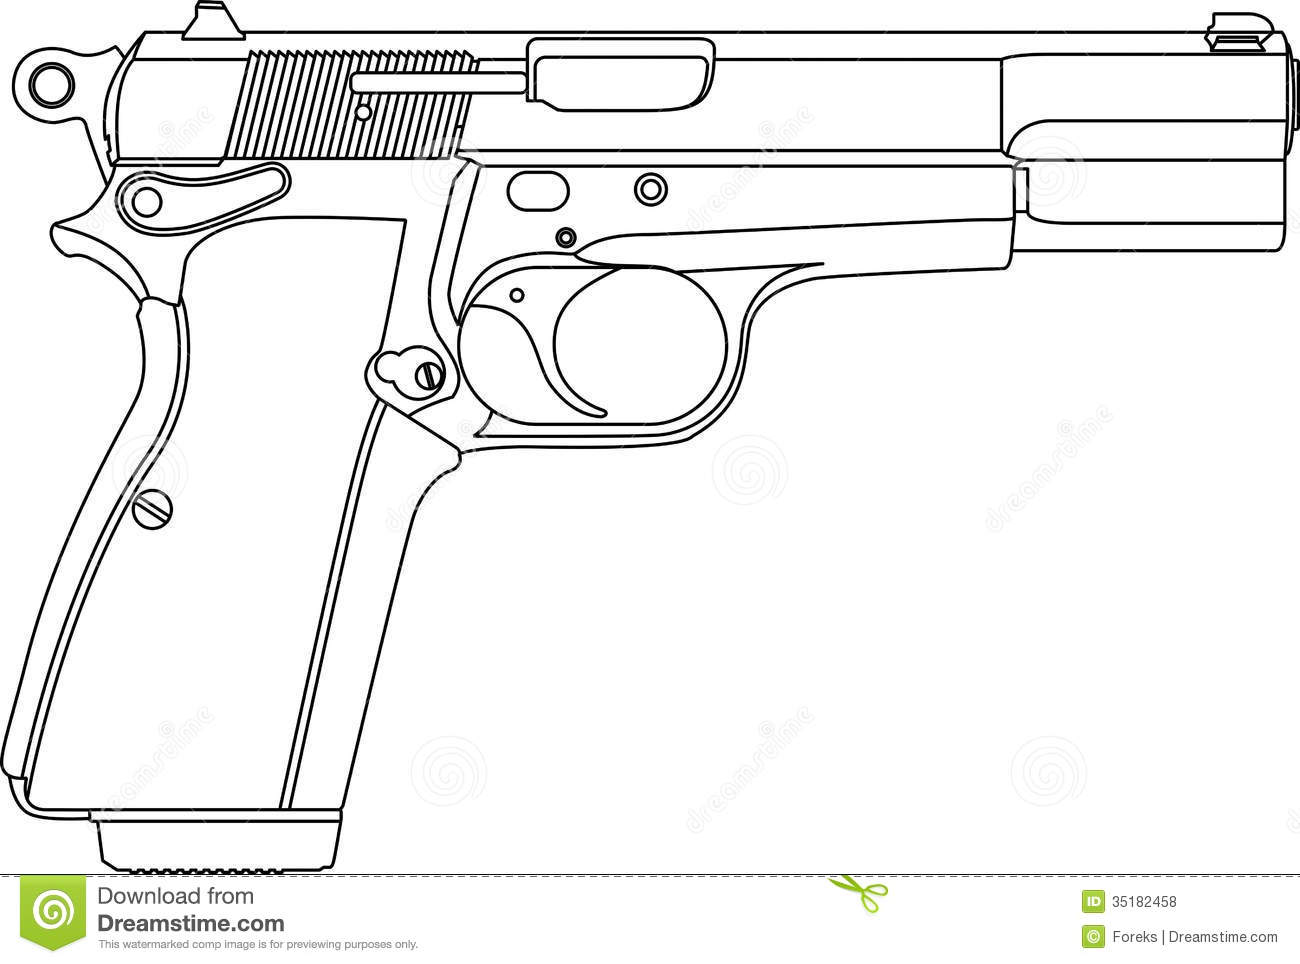 Wireframe Gun Pistol Royalty Free Stock Photos   Image  35182458